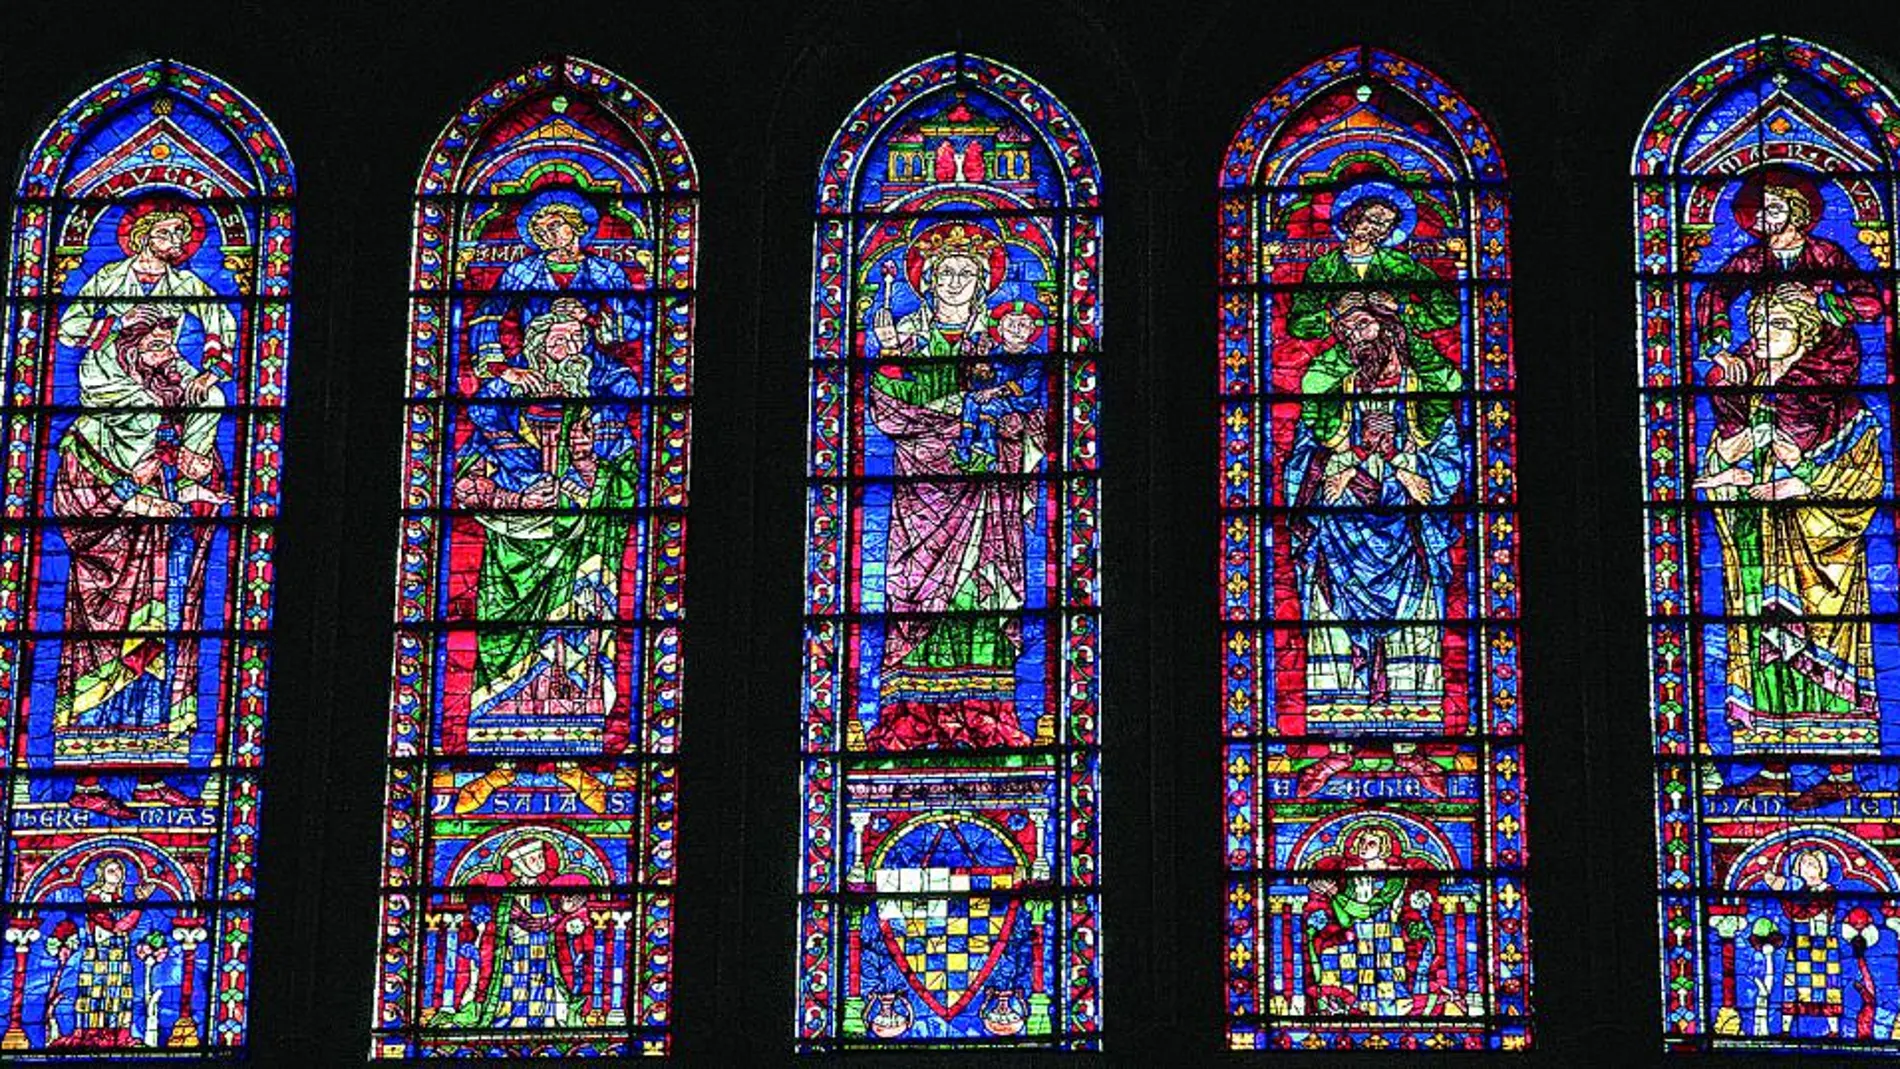 La luz apostólica. Las vidrieras de la catedral de Chartres están plagadas de simbología (en la imagen, los cuatro apóstoles) y son una de las cumbres del sistema de iluminación arquitectónica del gótico